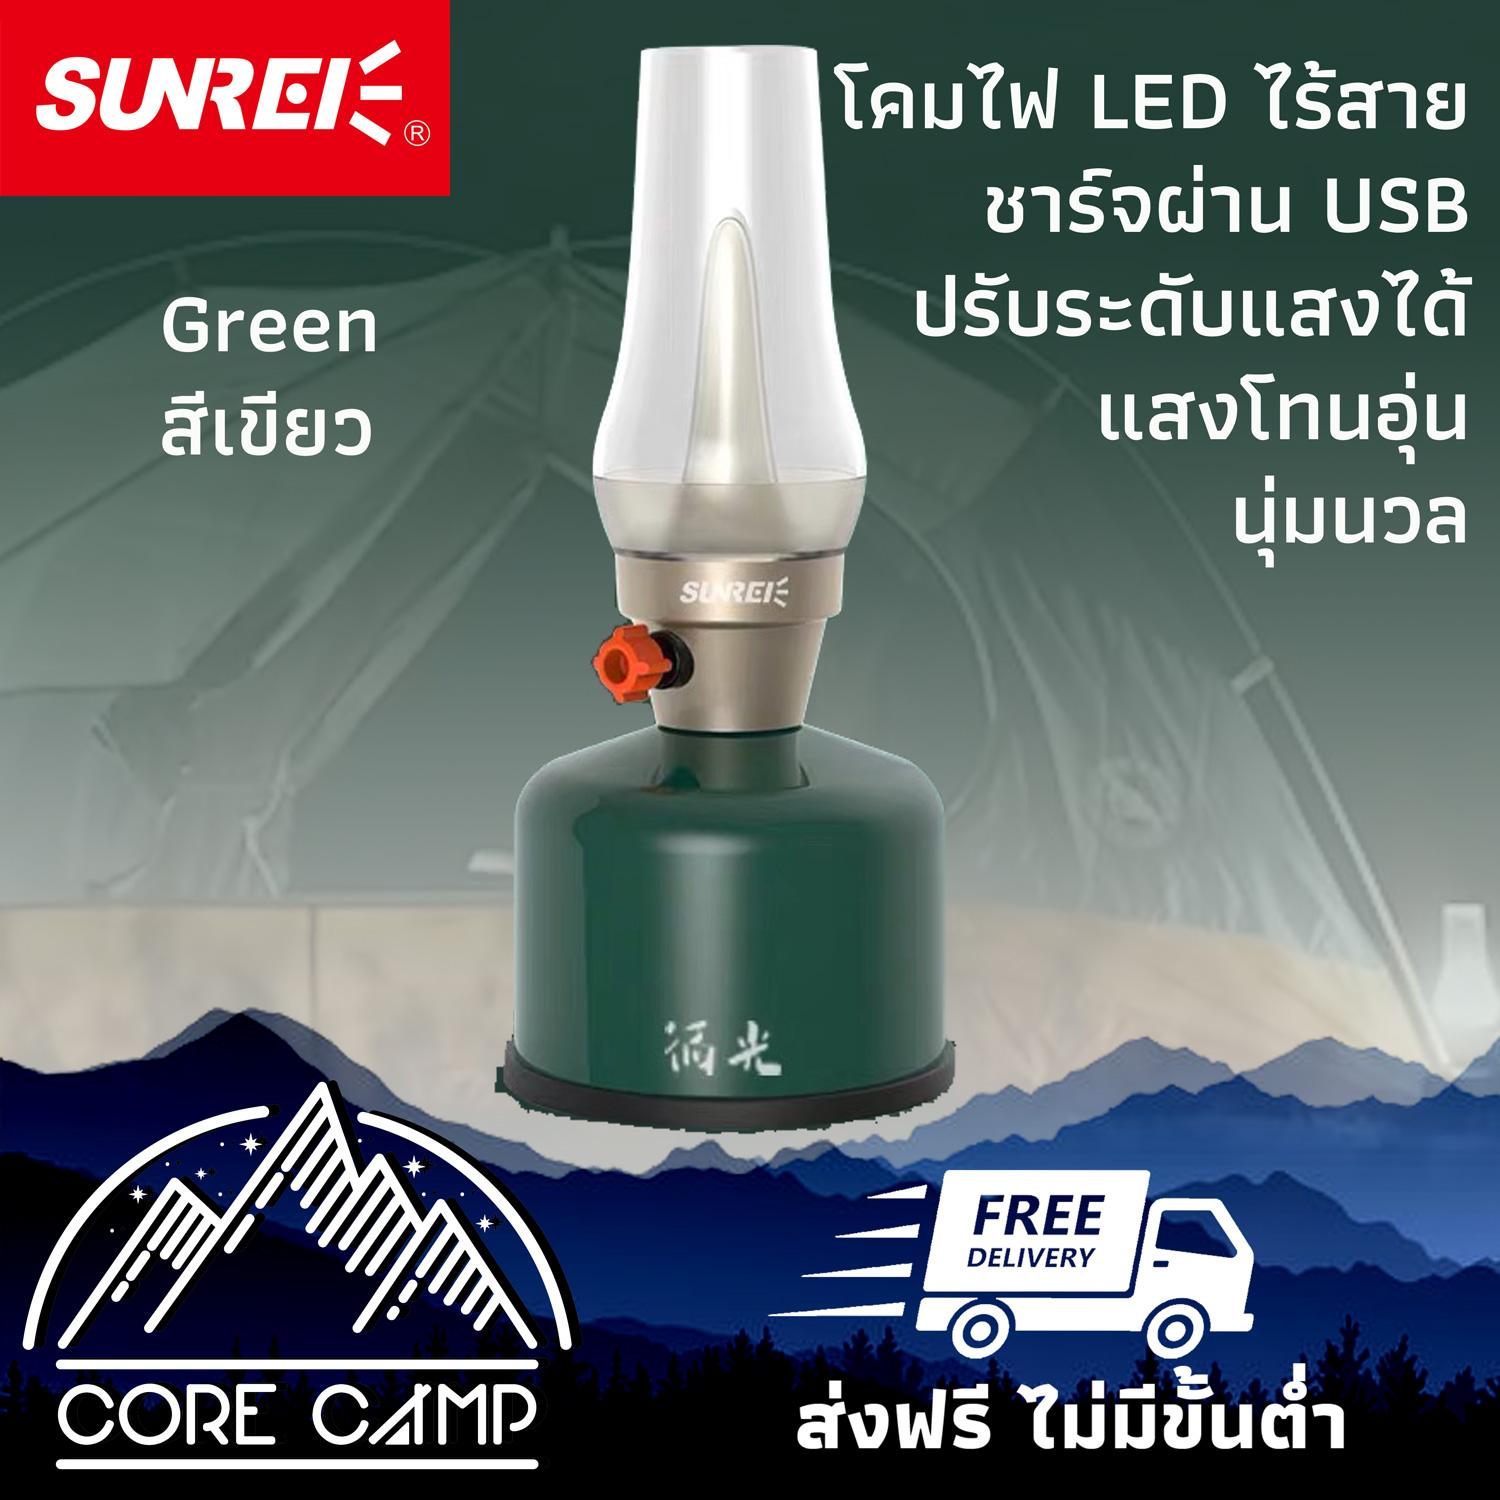 โคมไฟ LED ชาร์จผ่าน USB แบตเตอรี่ในตัว SUNREE รุ่น Green Light ปรับระดับหรี่แสงได้ต่อเนื่อง ผลิตจากวัสดุรีไซเคิล เป็นมิตรกับสิ่งแวดล้อม มี 4 สี เขียว เหลือง ขาว ดำ LED Lantern